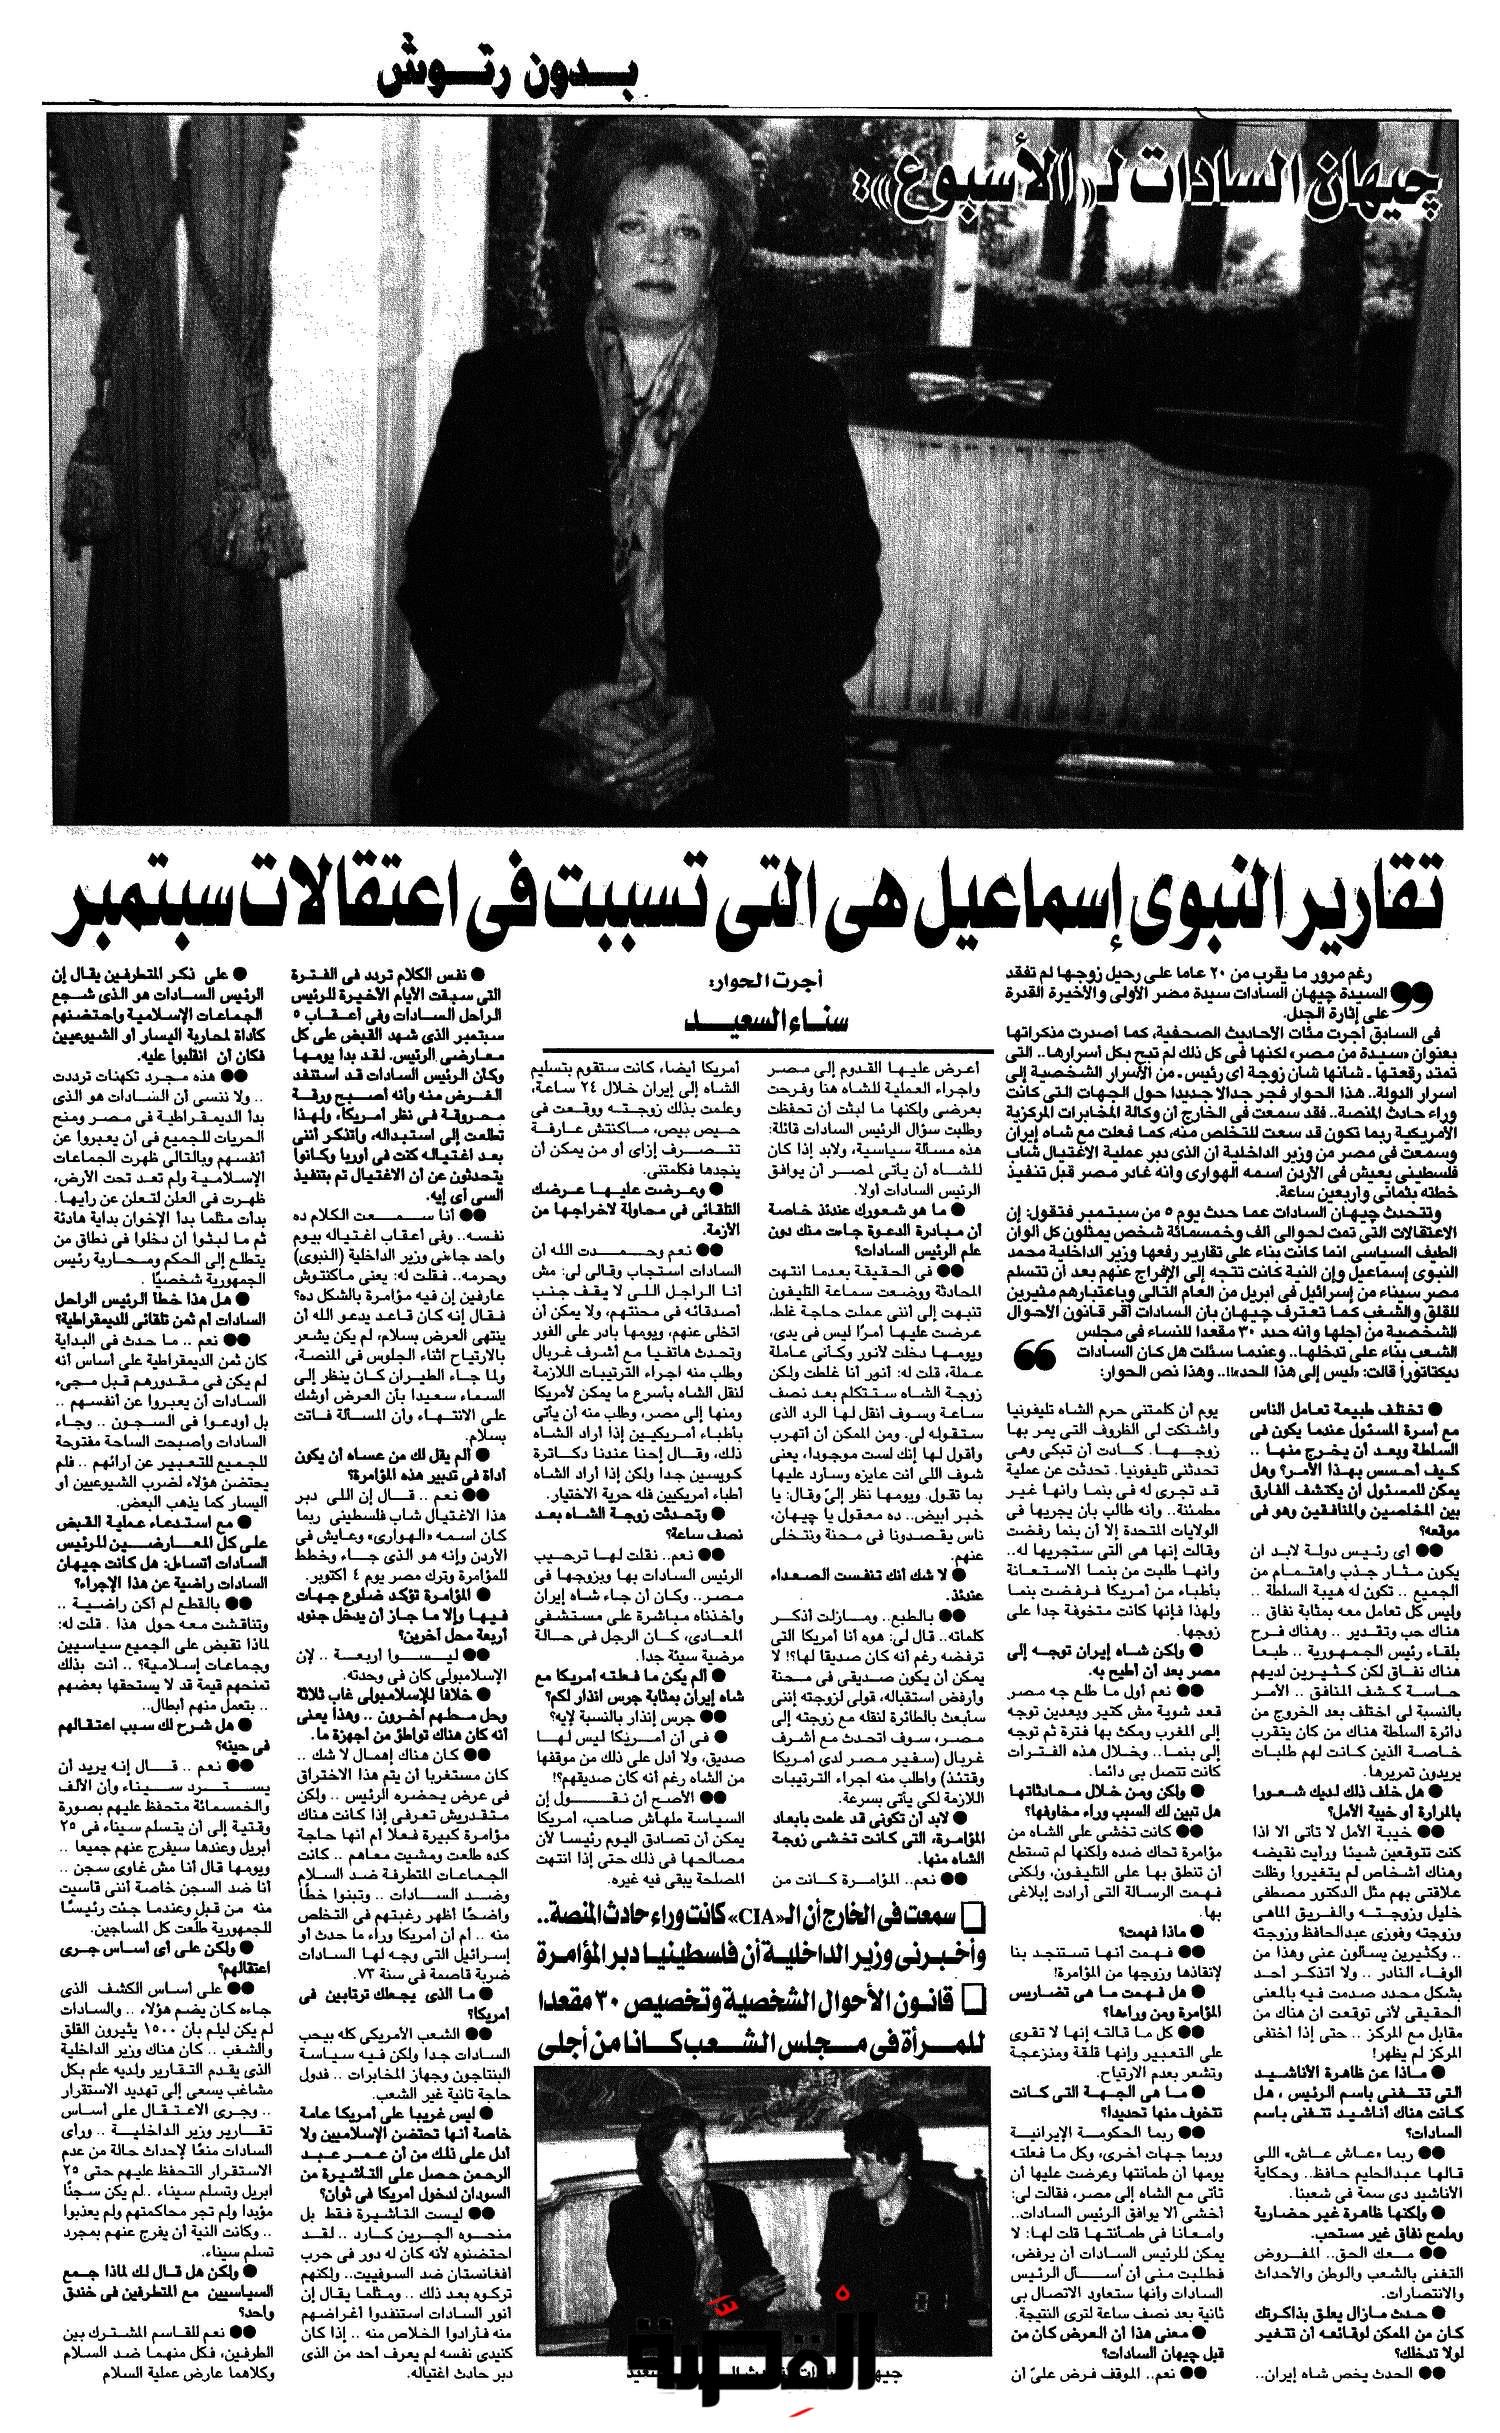 جيهان السادات- أرشيف جريدة الأسبوع- 22 يناير 2001